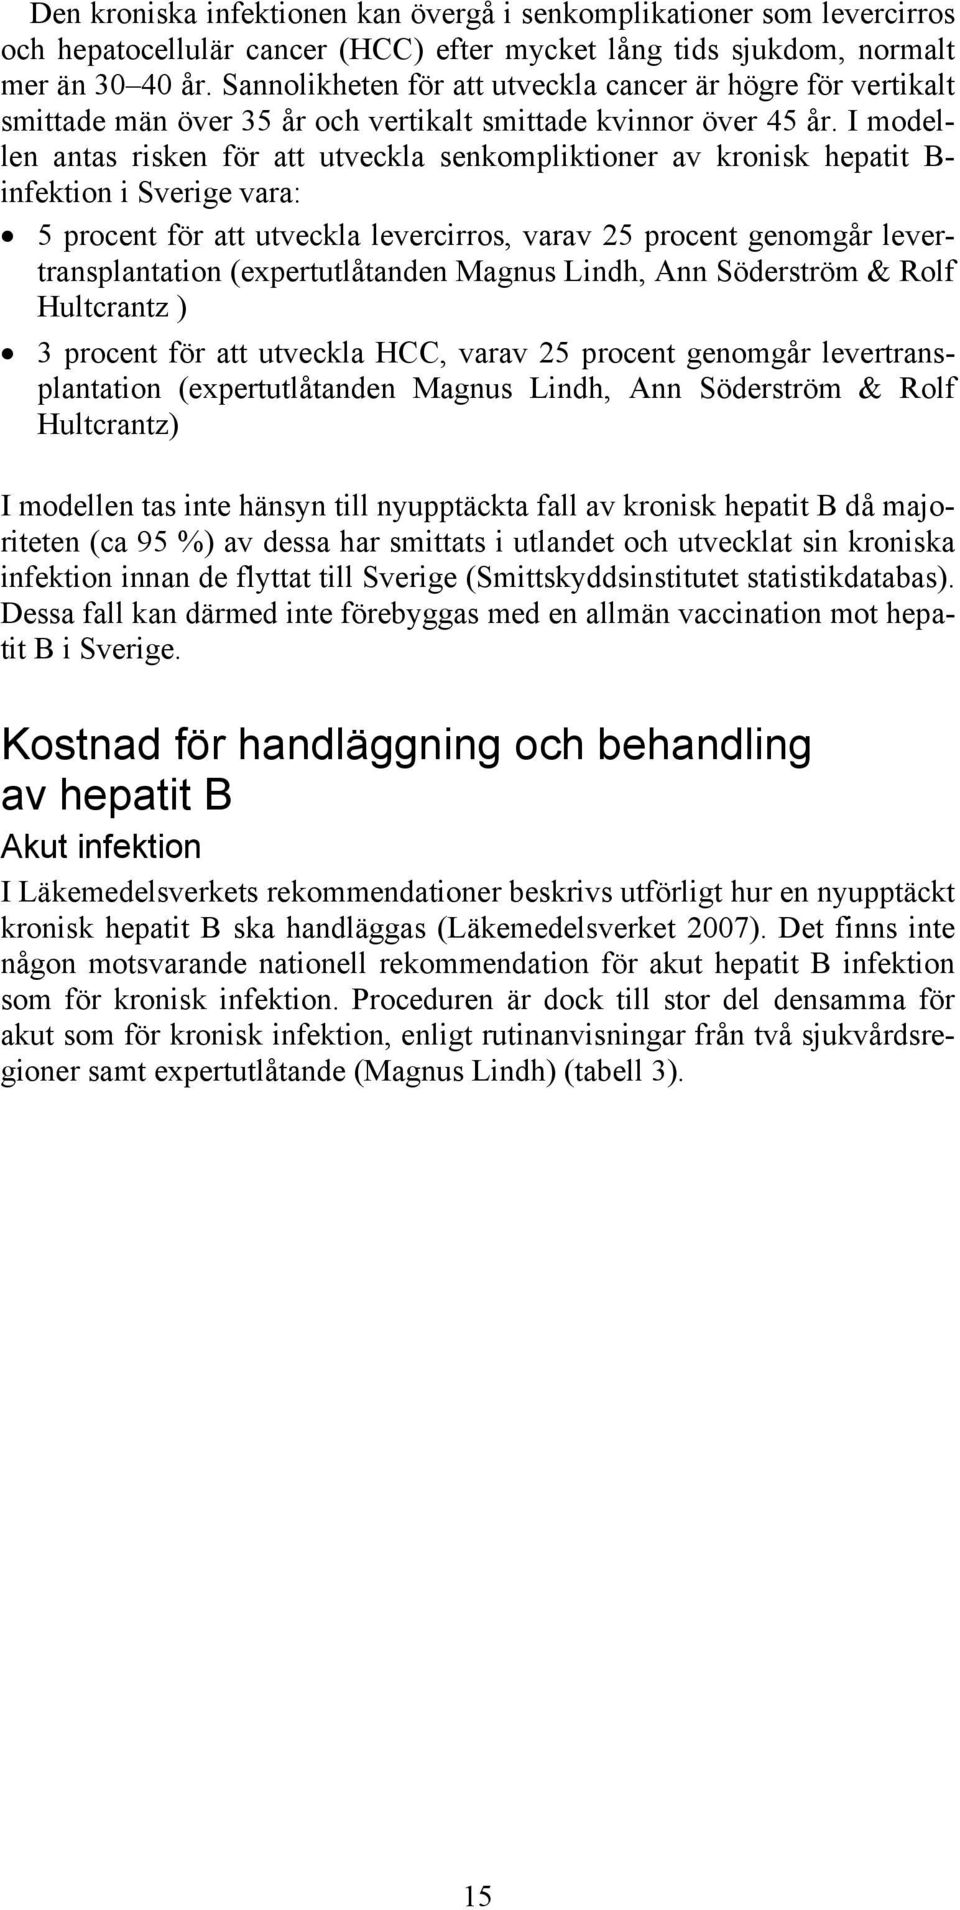 I modellen antas risken för att utveckla senkompliktioner av kronisk hepatit B- infektion i Sverige vara: 5 procent för att utveckla levercirros, varav 25 procent genomgår levertransplantation